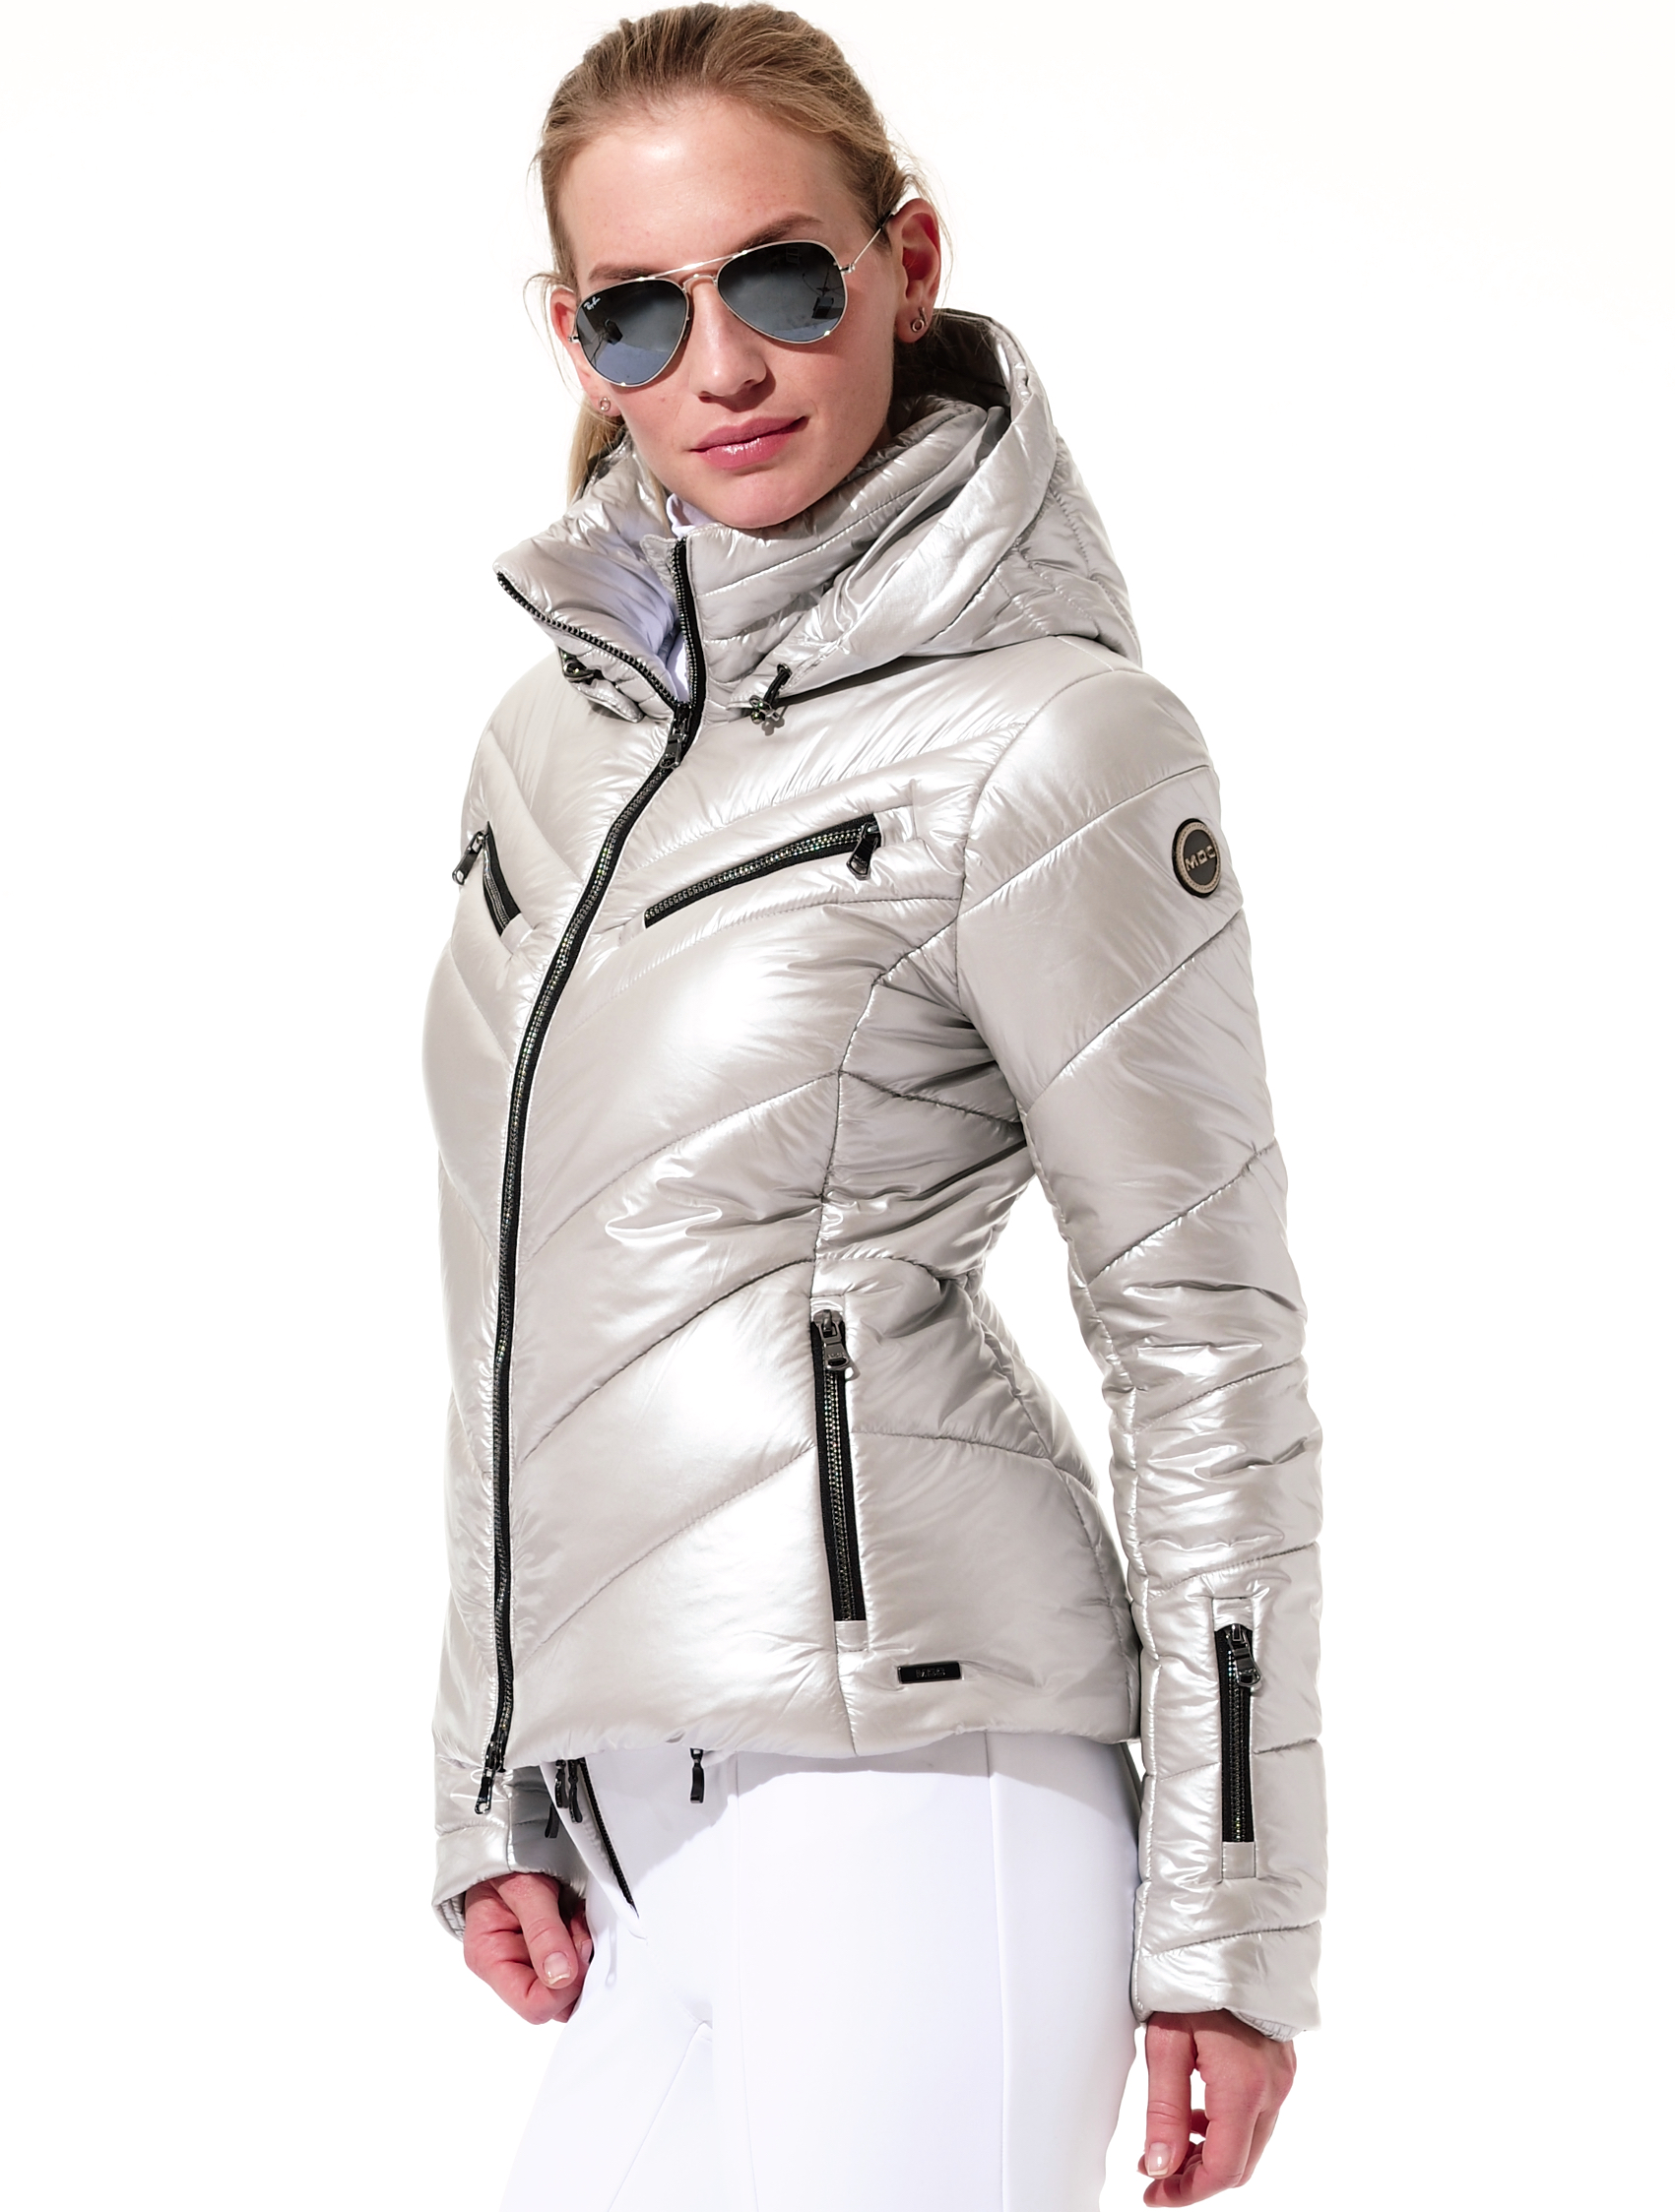 shiny ski jacket silver 